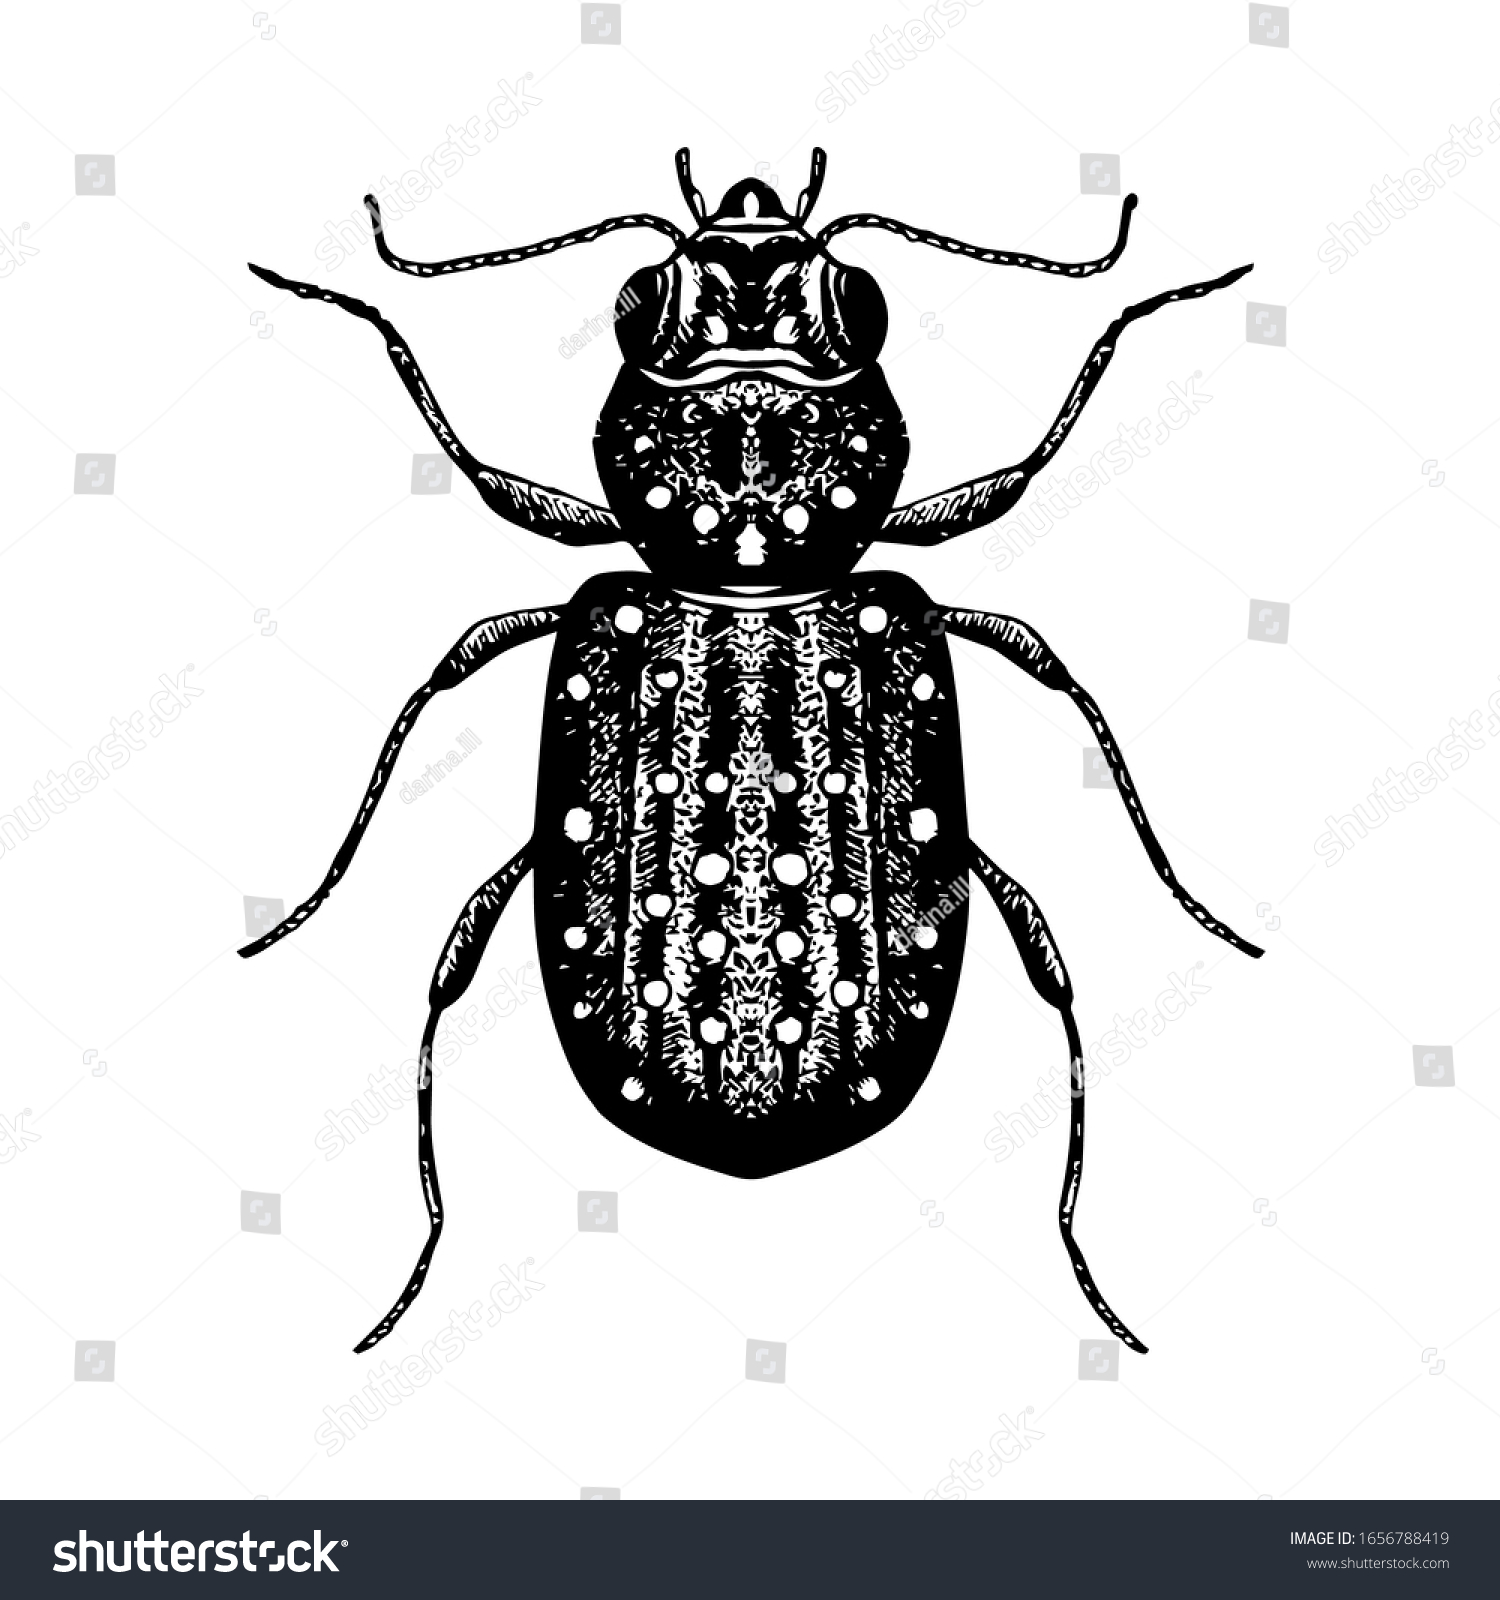 カブトムシの手描きのスケッチ 昆虫のベクターイラスト 白黒の昆虫画 アイコン ロゴ タトゥーデザインのエレメント のベクター画像素材 ロイヤリティフリー